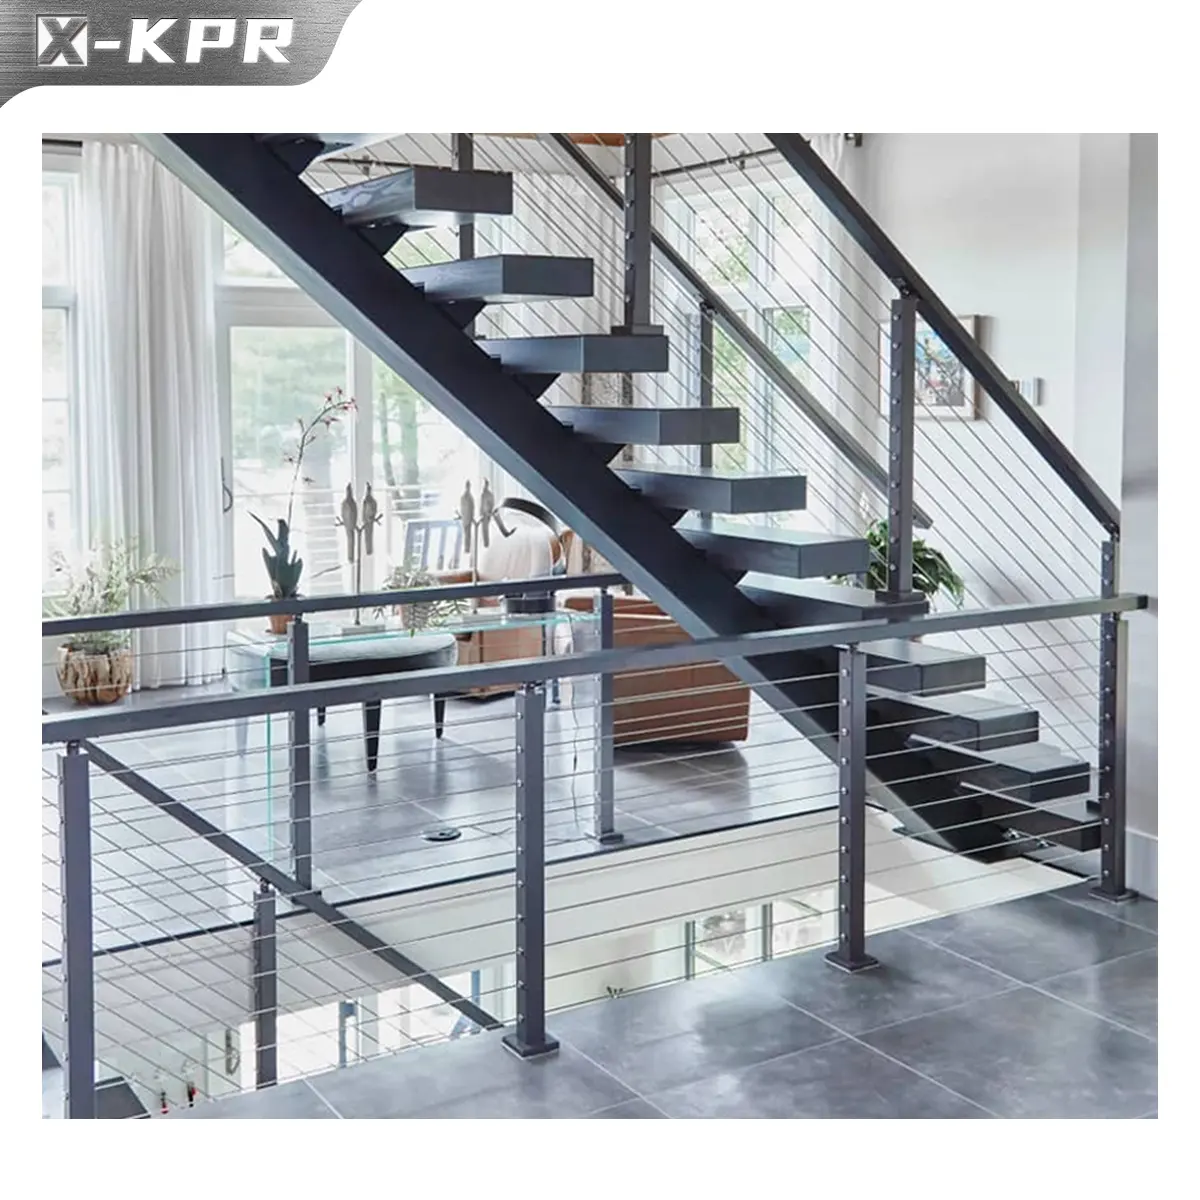 Merdiven için X-KPR düşük bakım merdiveni kablo korkuluk paslanmaz çelik tel kablo korkuluk